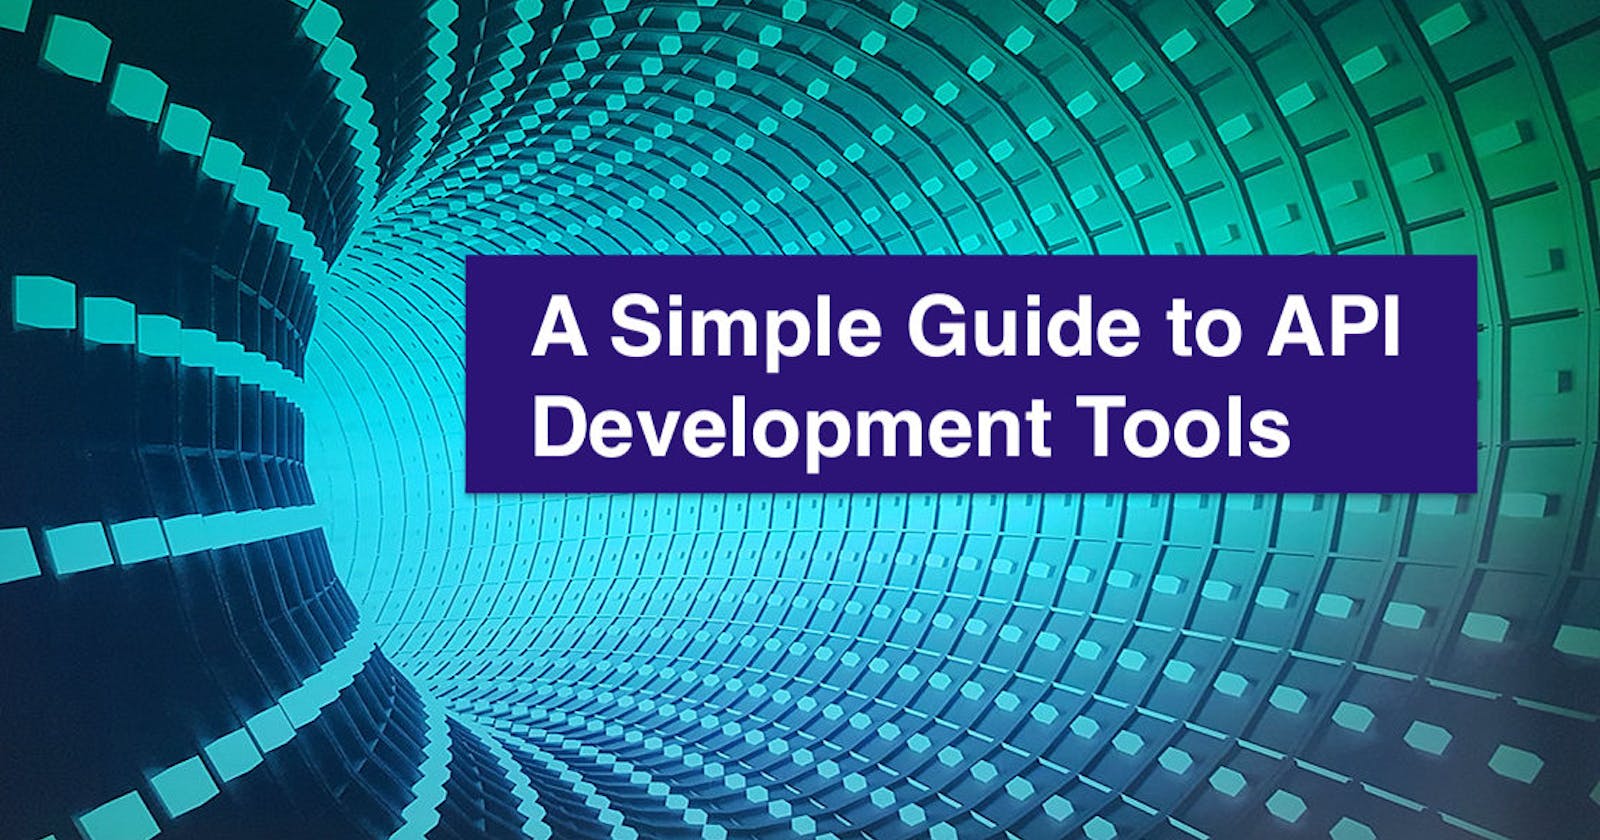 Tools for the Modern API Developer